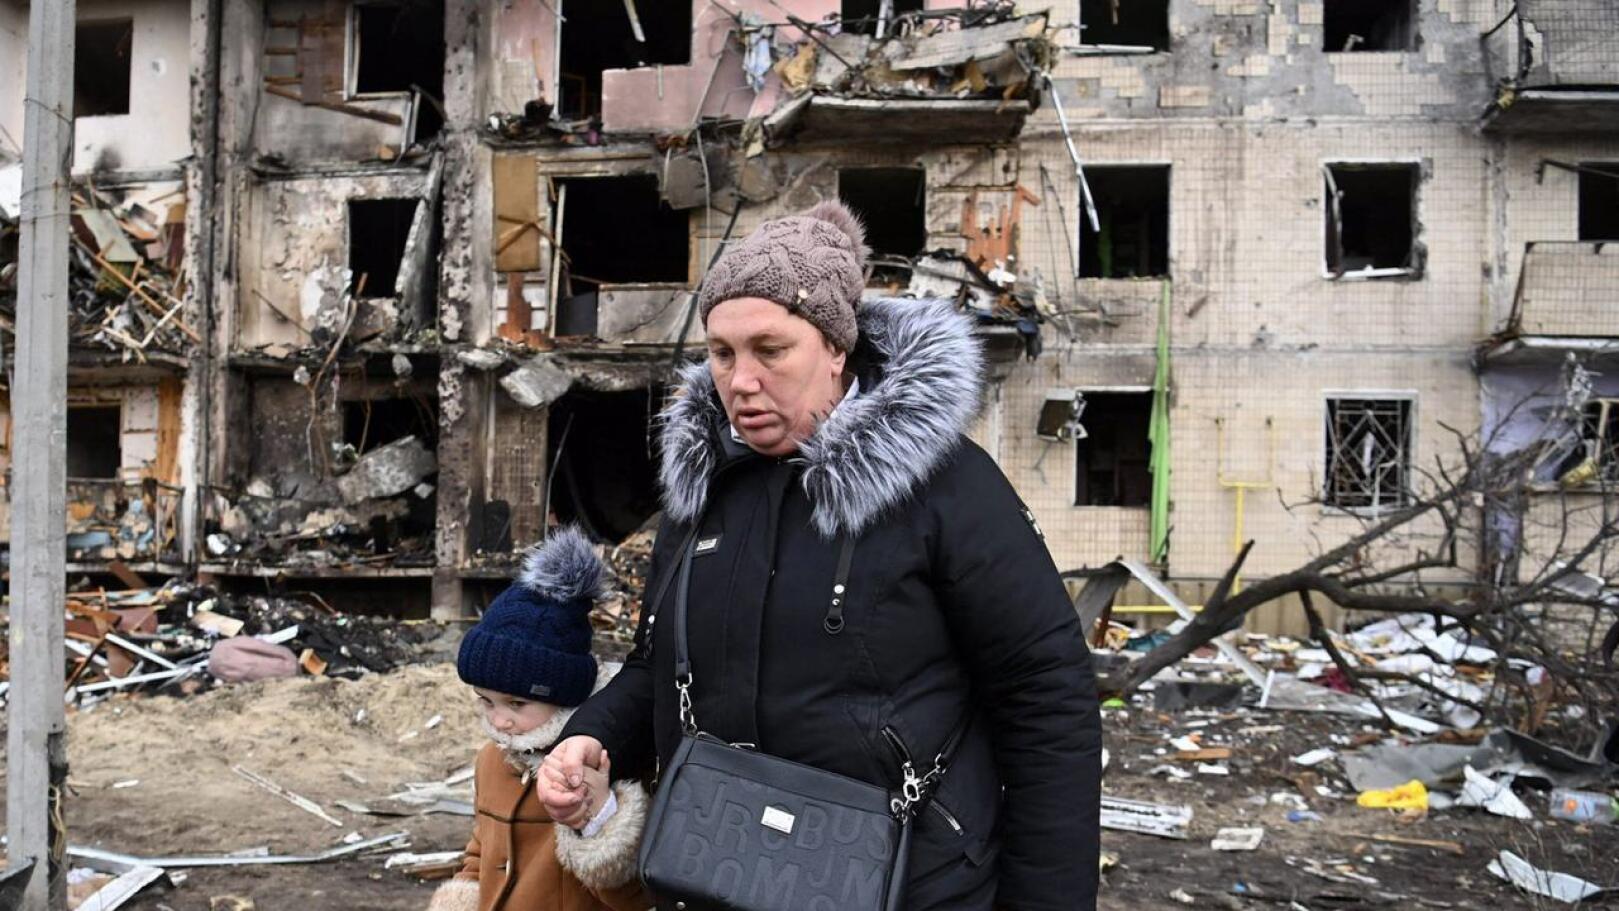 Nainen ja pikkuktyttö kävelemässä tykistöammusten perjantaina tuhoamalla kadulla Kiovassa.